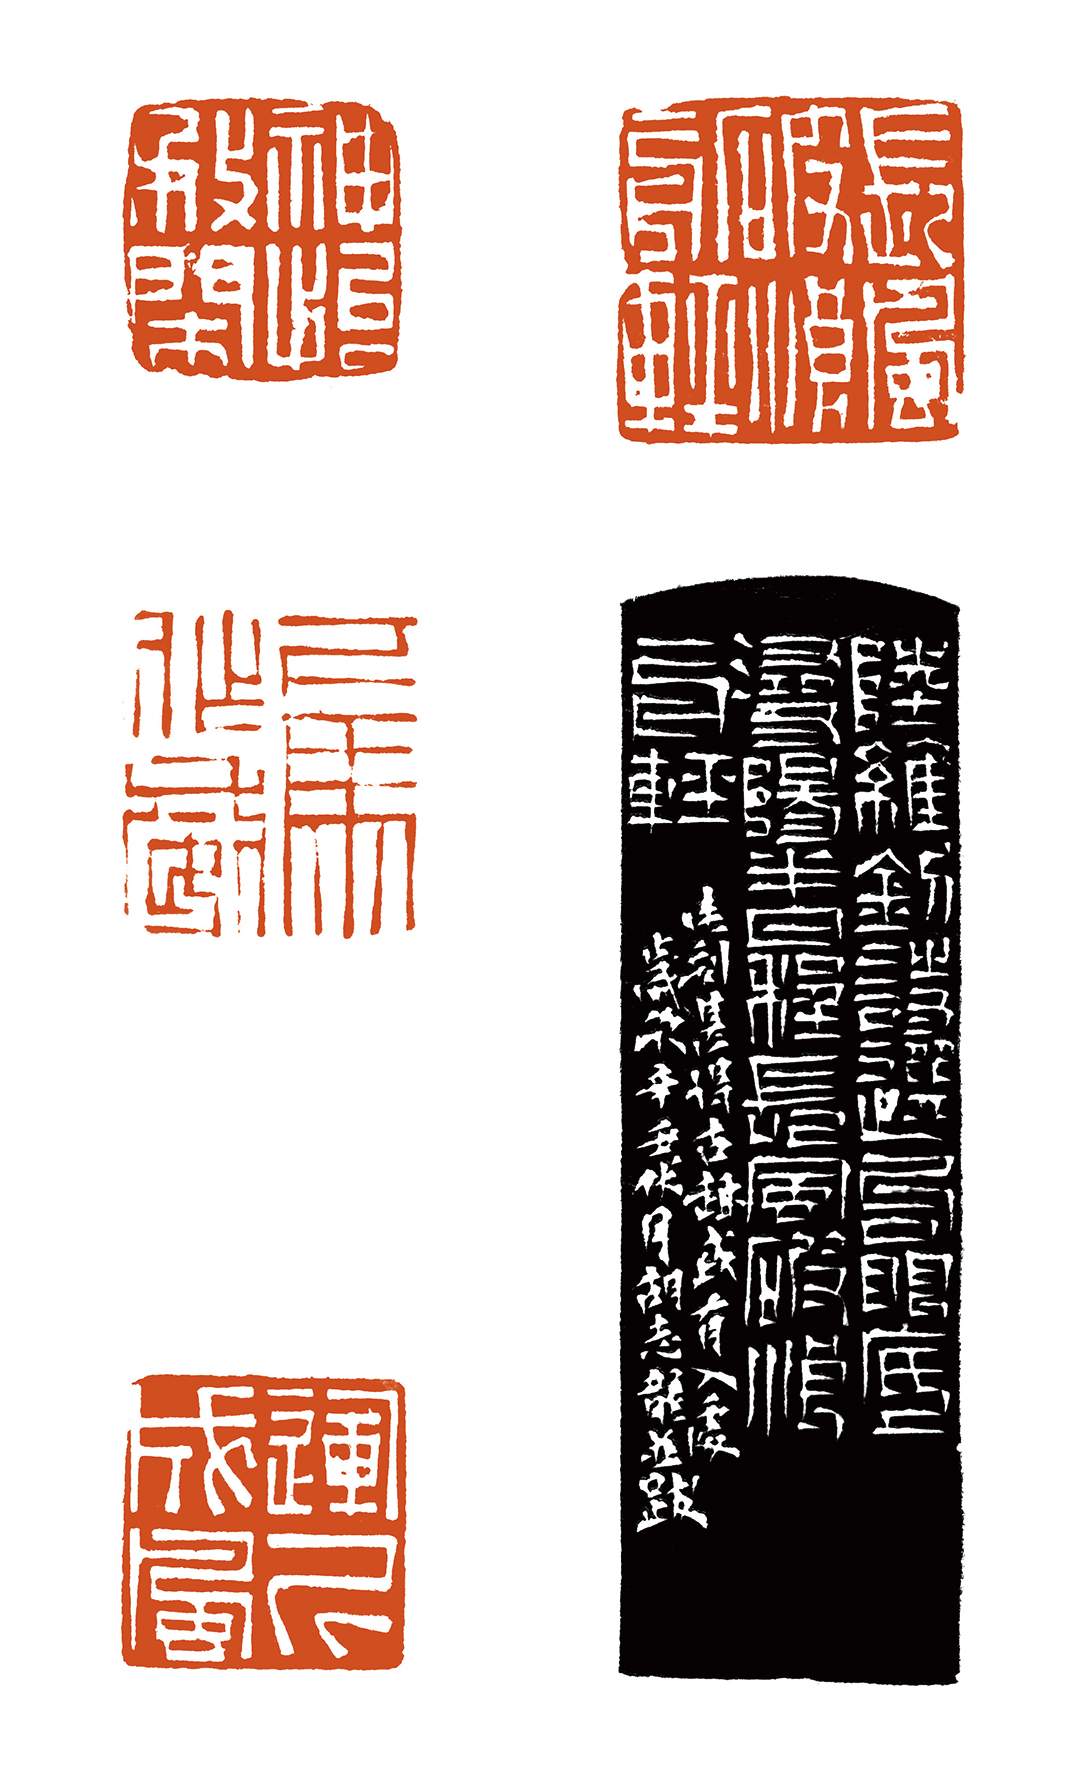  “书学之路——中国高等书法教育成果系列之篆刻专题展”胡志龙作品